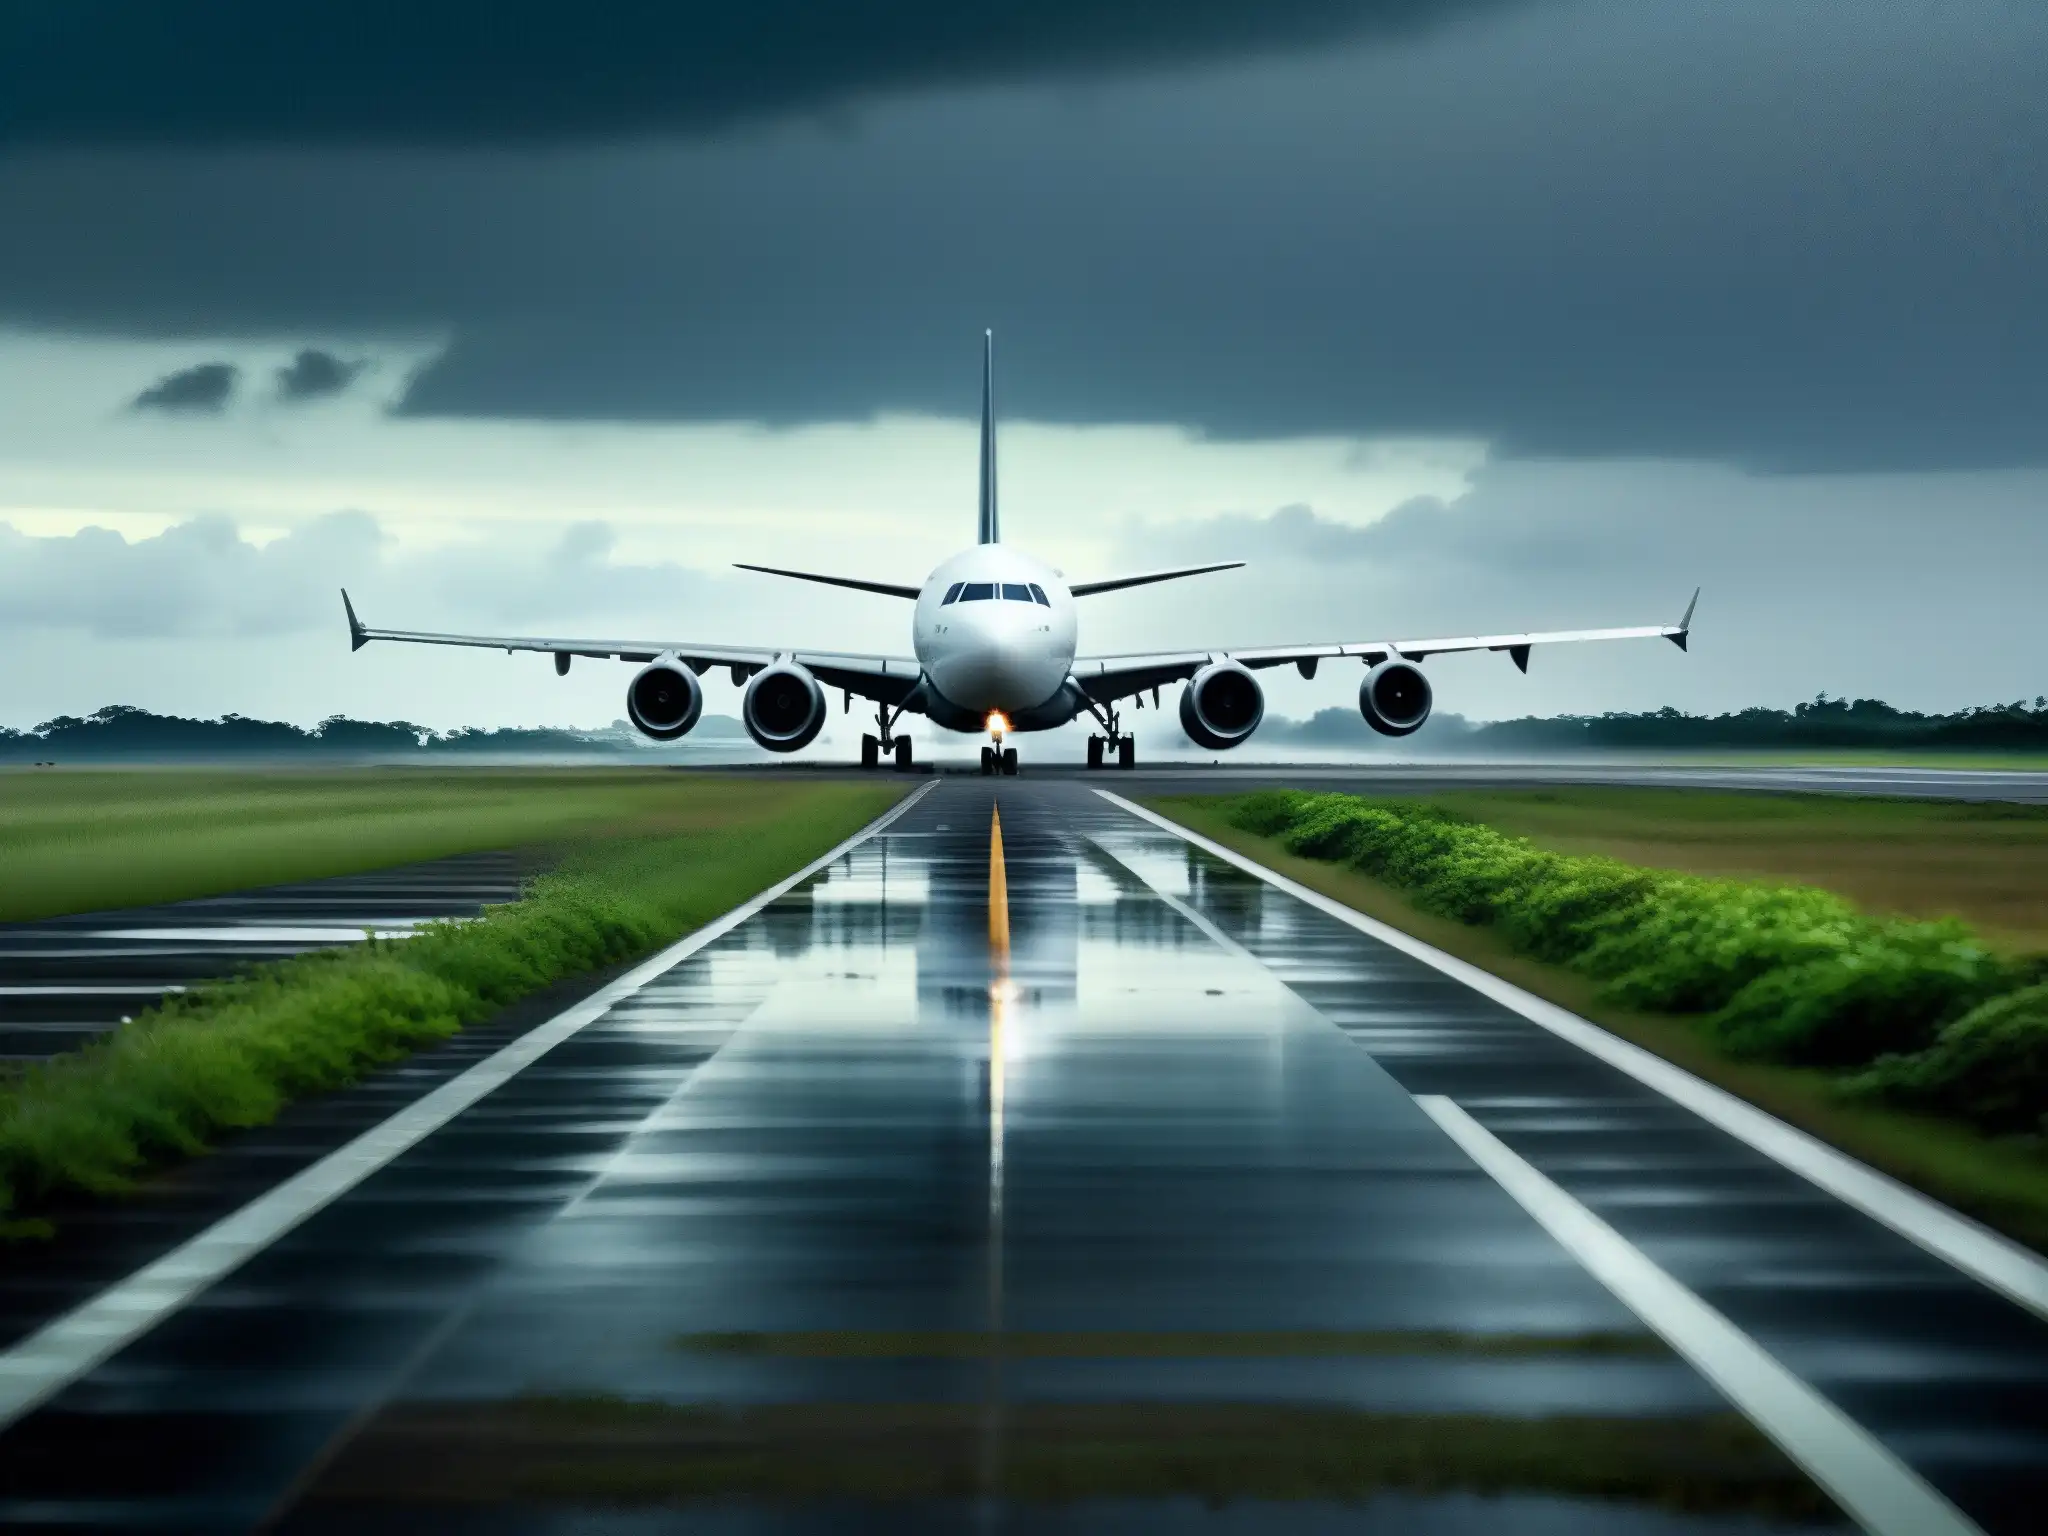 Desolada pista de aeropuerto abandonado con restos de avión y cielo sombrío, evocando misterio y teorías conspiración MH370